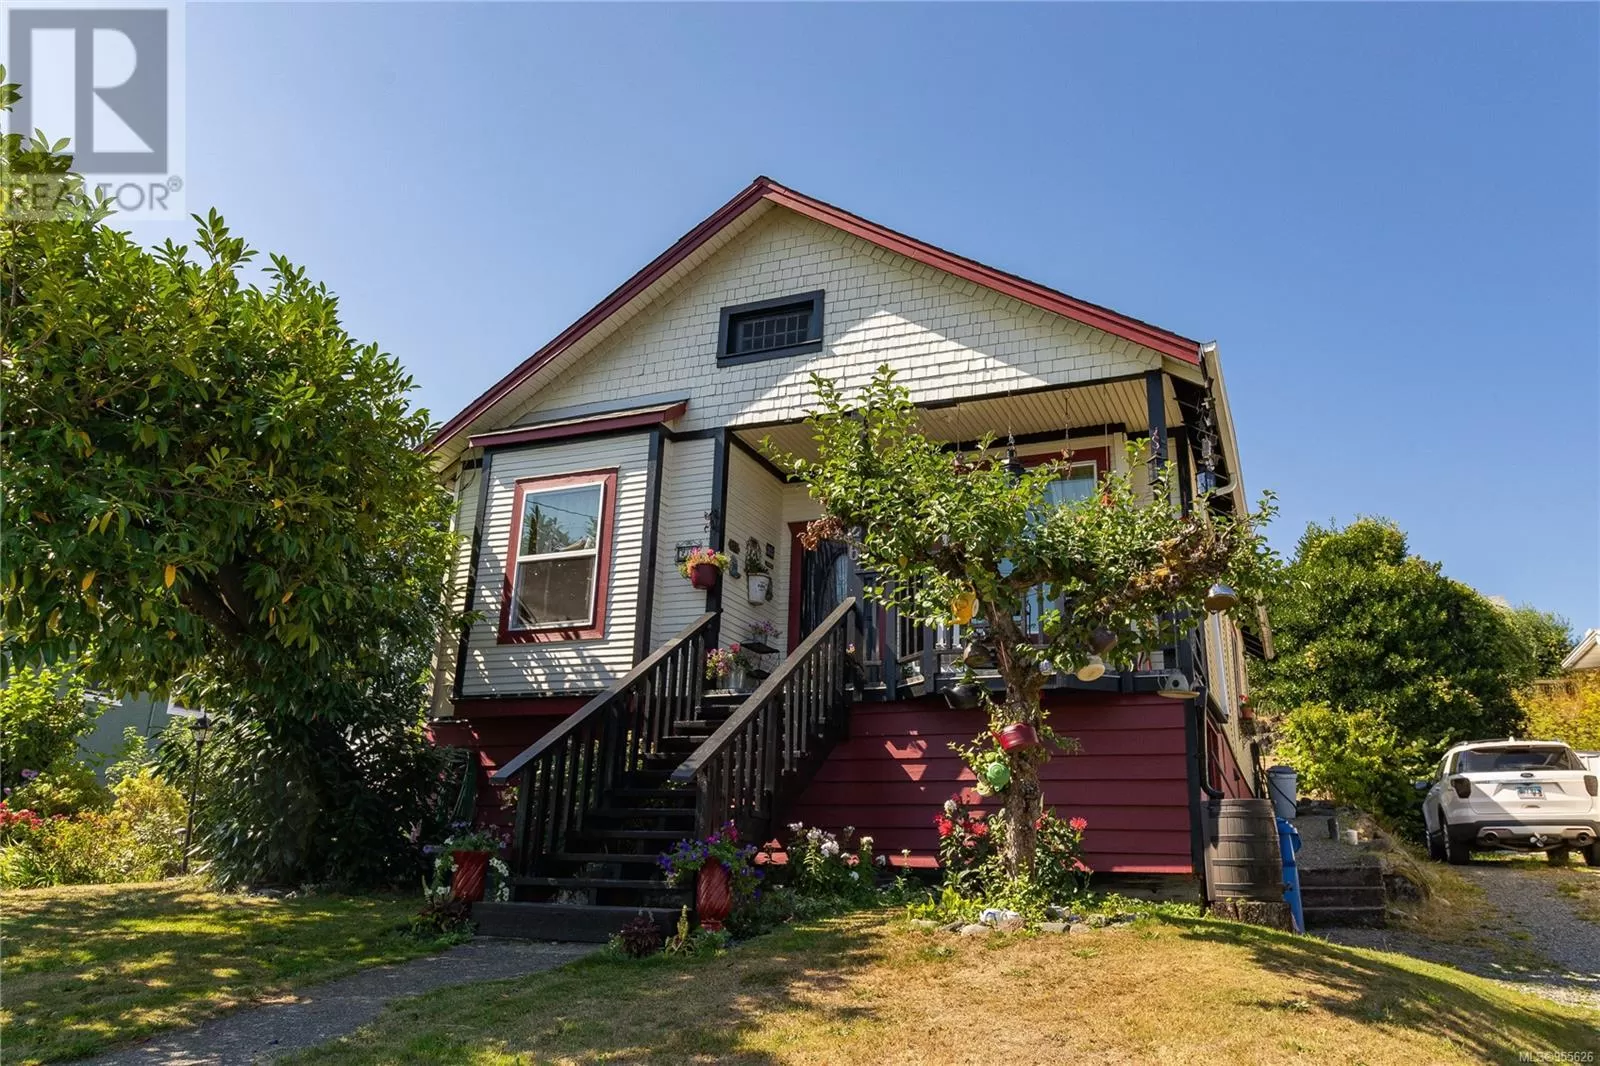 House for rent: 26 Haliburton St, Nanaimo, British Columbia V9R 4V7